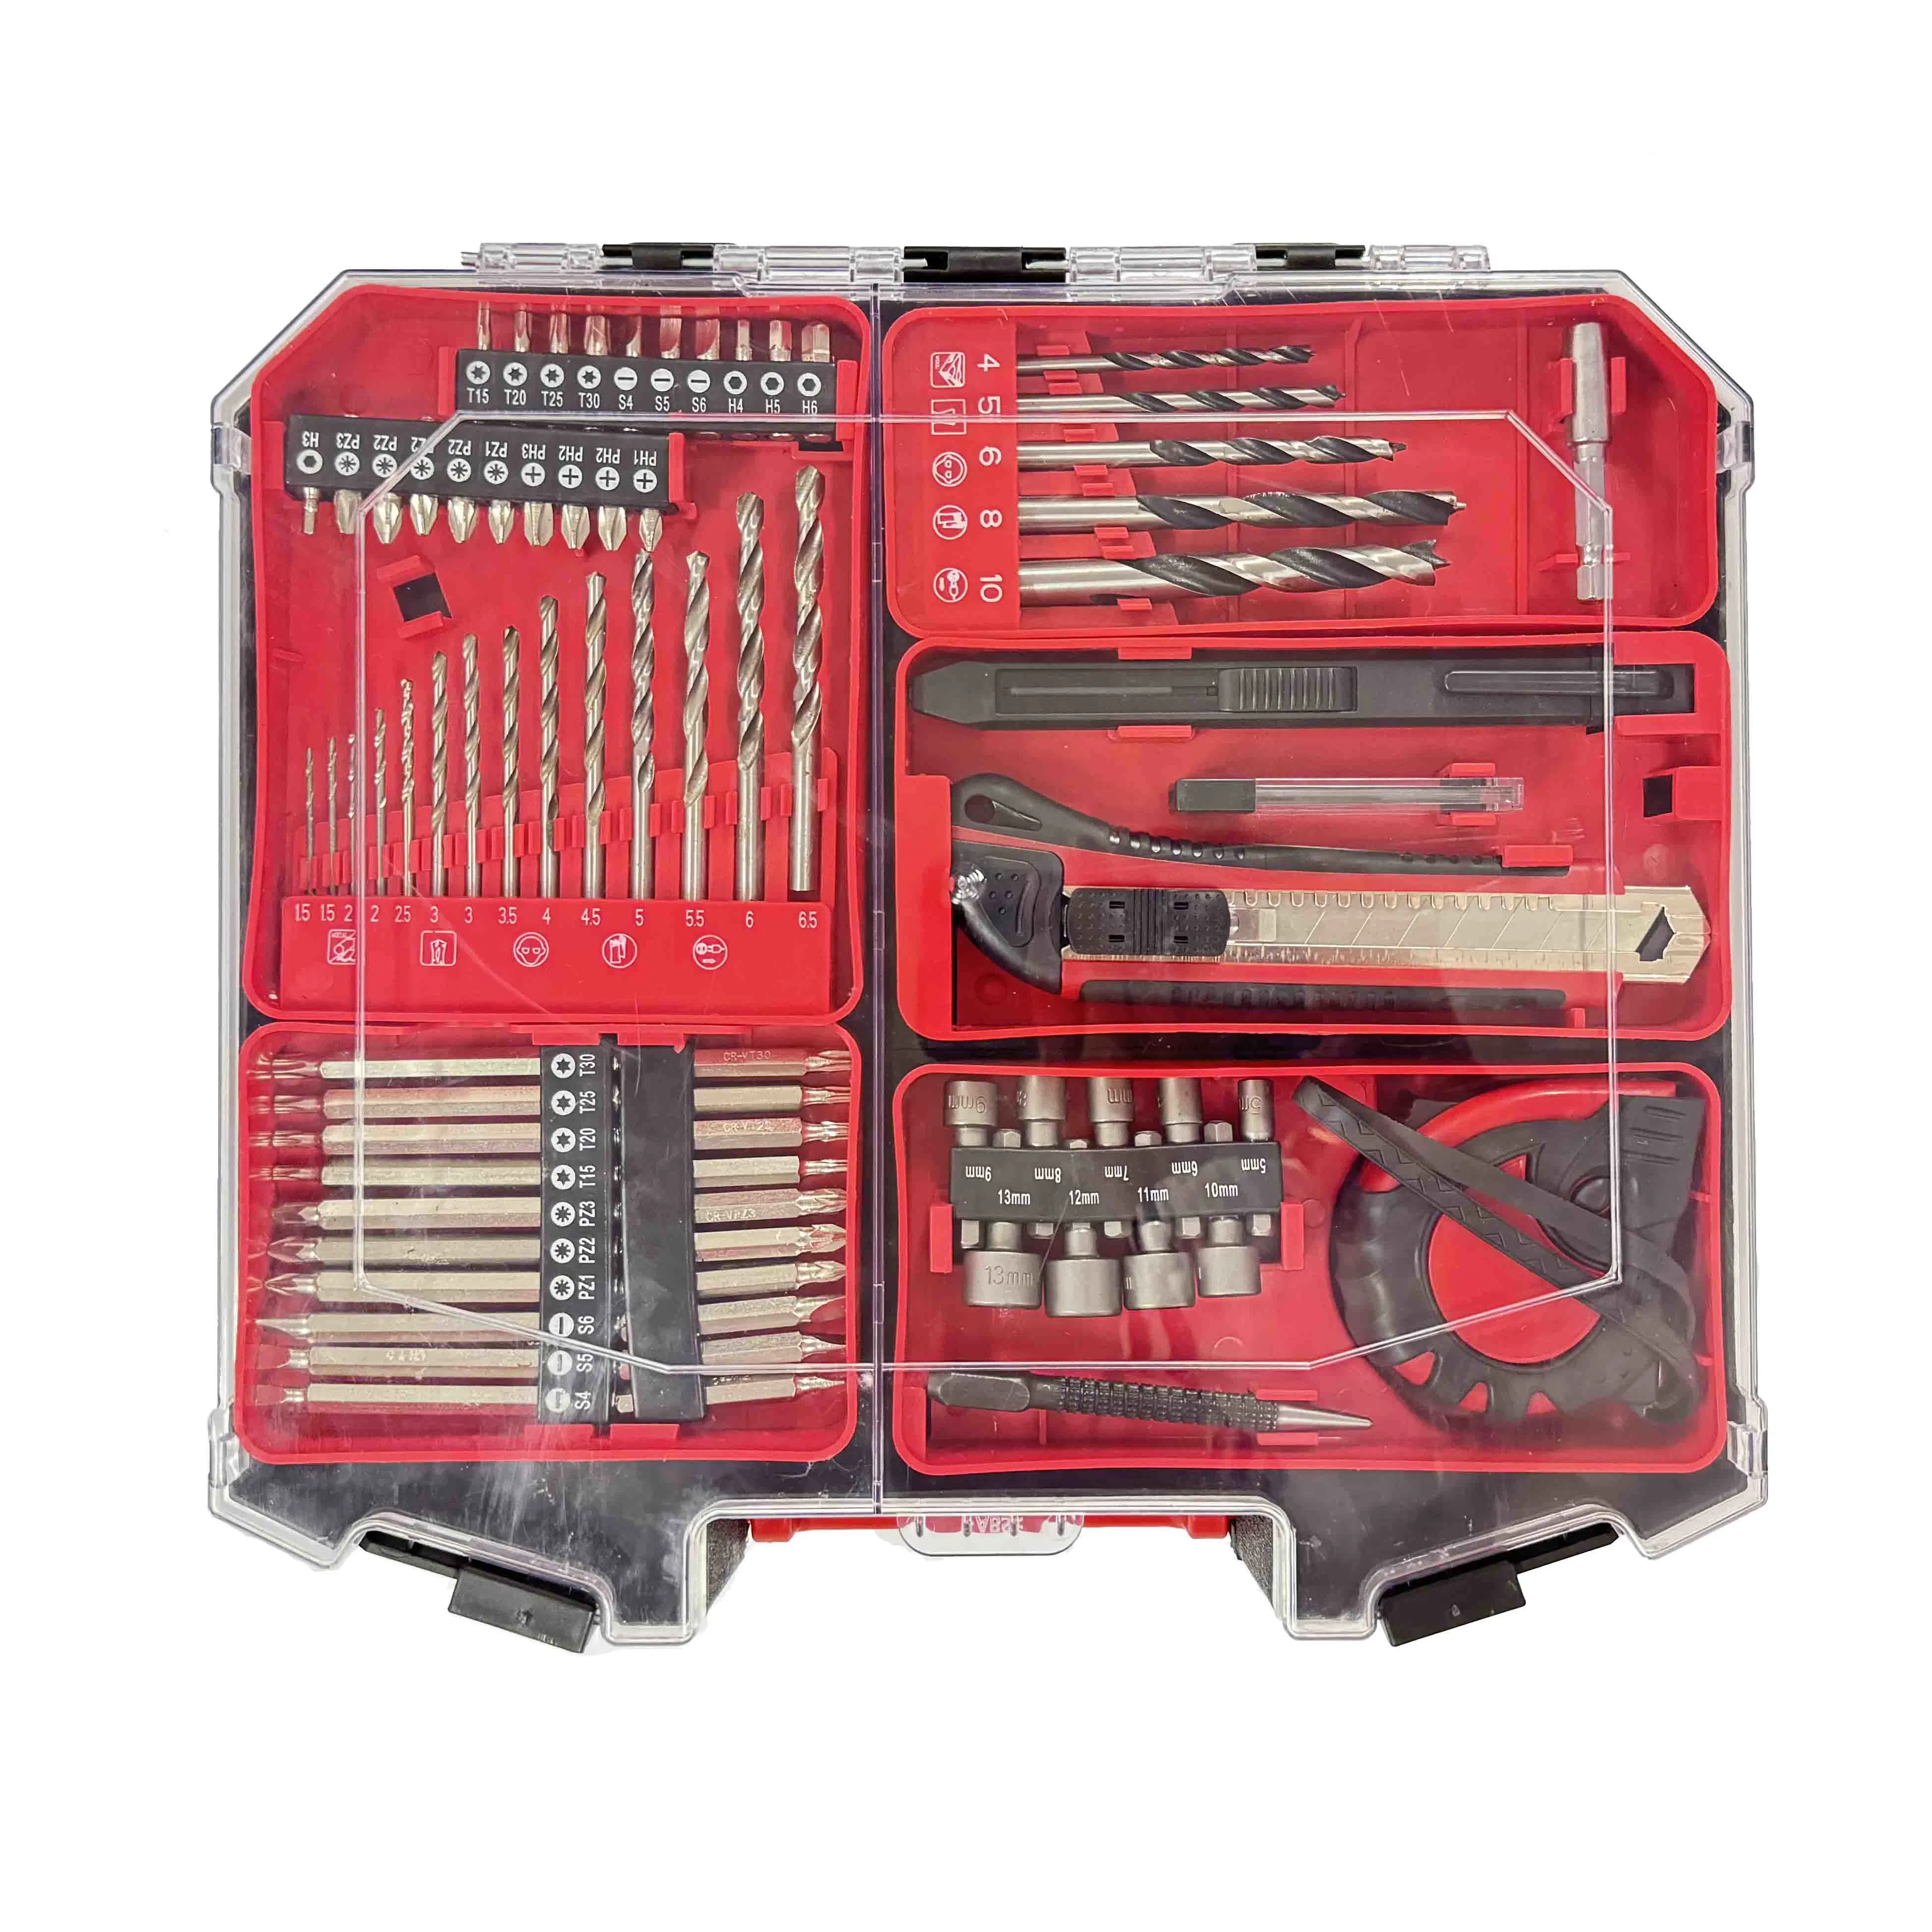 Jeu de forets sans fil boîte à outils électrique jeu de forets à main Outil de boîte de jeu de forets au lithium Krain machine